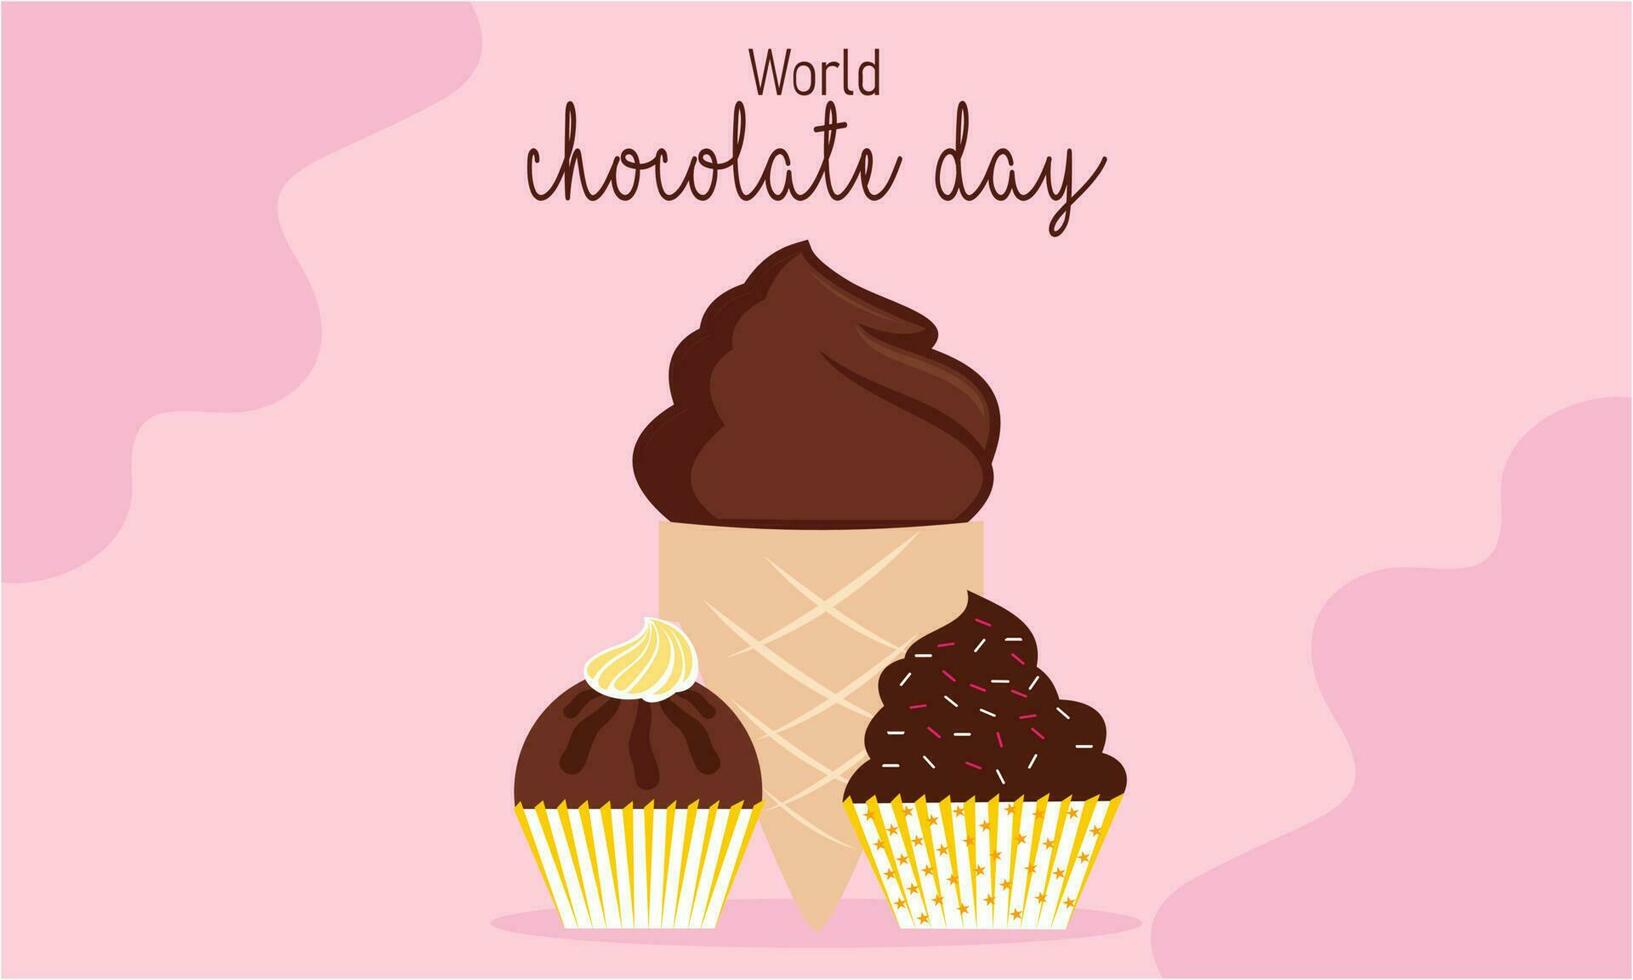 contento mondo cioccolato giorno illustrazione con cioccolato logo vettore